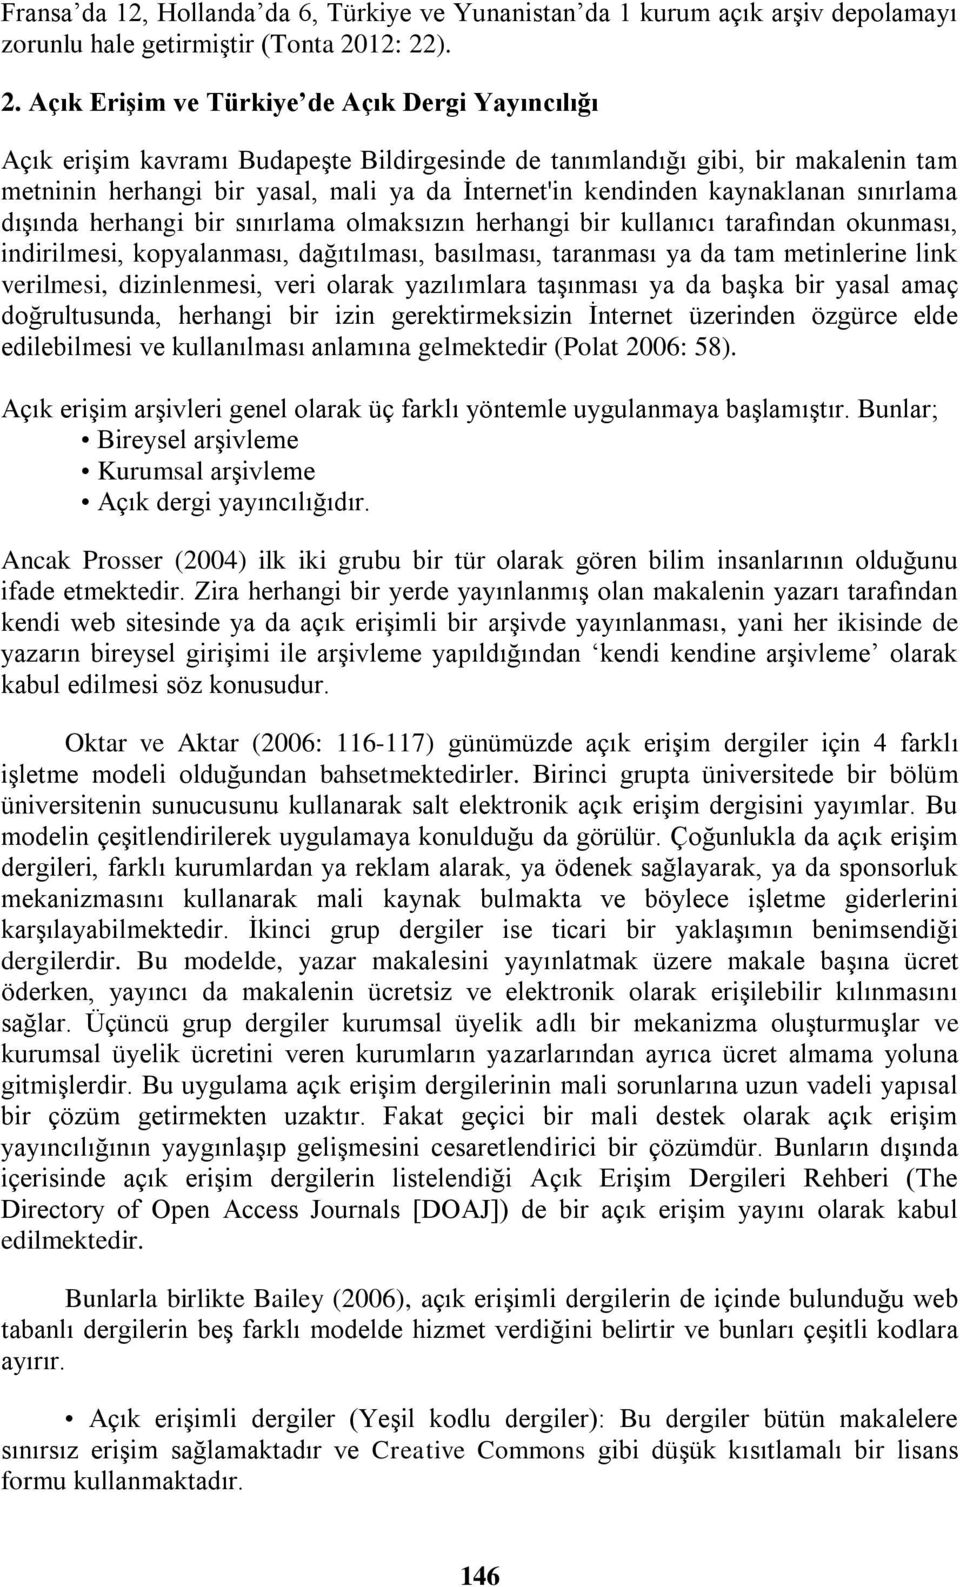 ). 2. Açık Erişim ve Türkiye de Açık Dergi Yayıncılığı Açık erişim kavramı Budapeşte Bildirgesinde de tanımlandığı gibi, bir makalenin tam metninin herhangi bir yasal, mali ya da İnternet'in